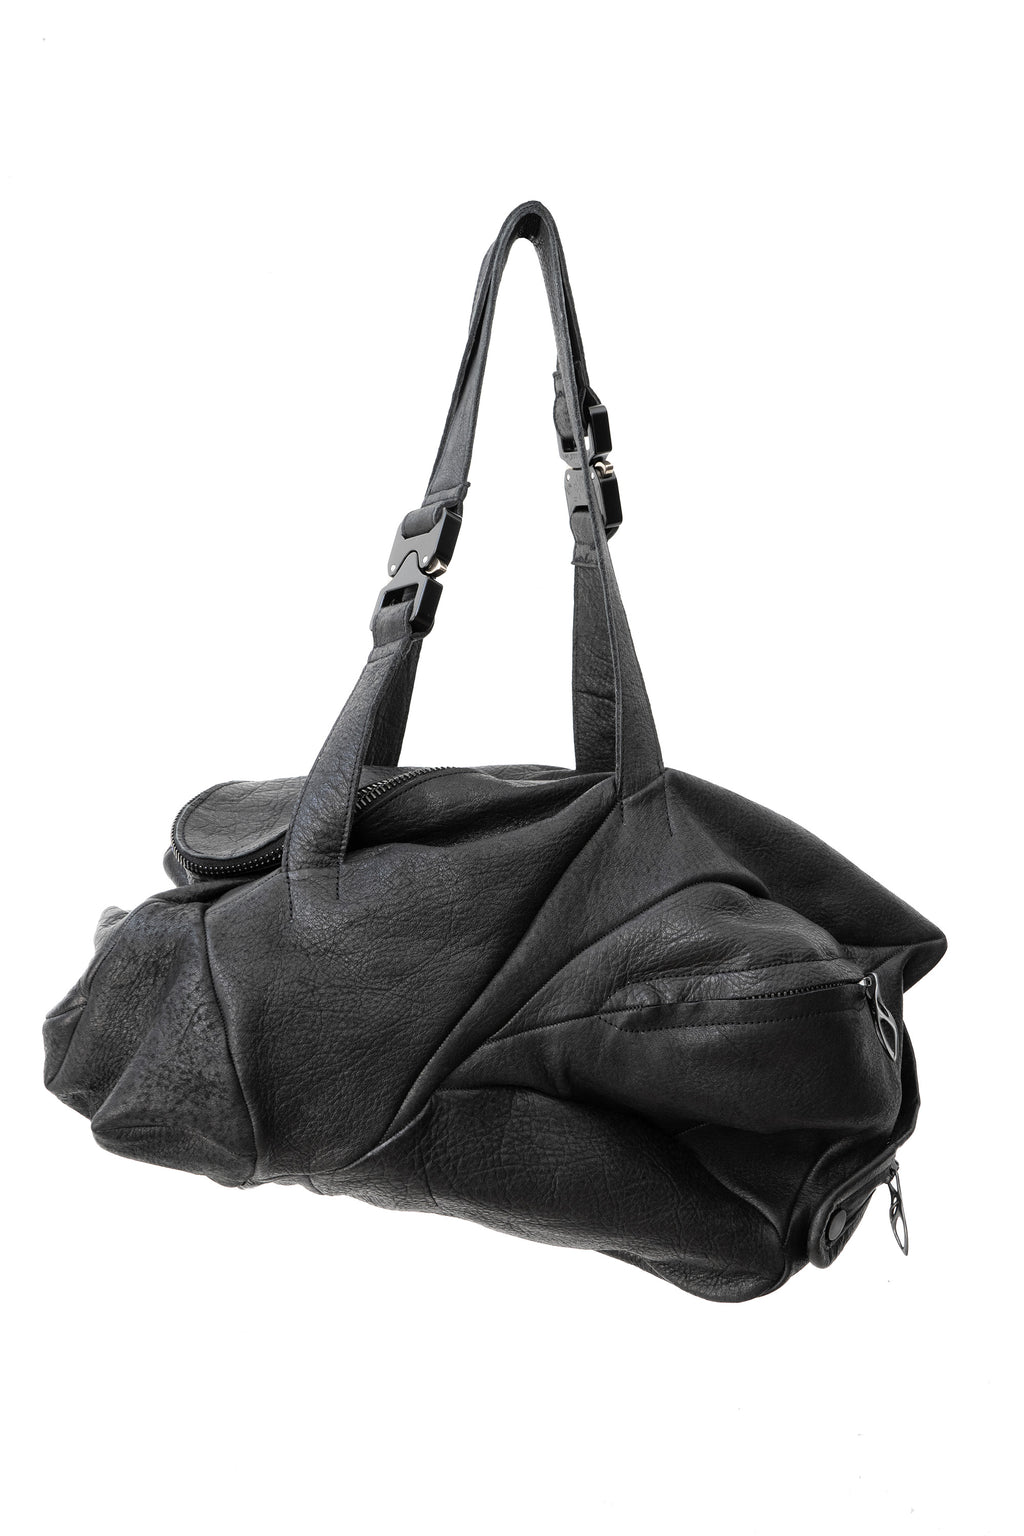 LEON EMANUEL BLANCK　bag47cm